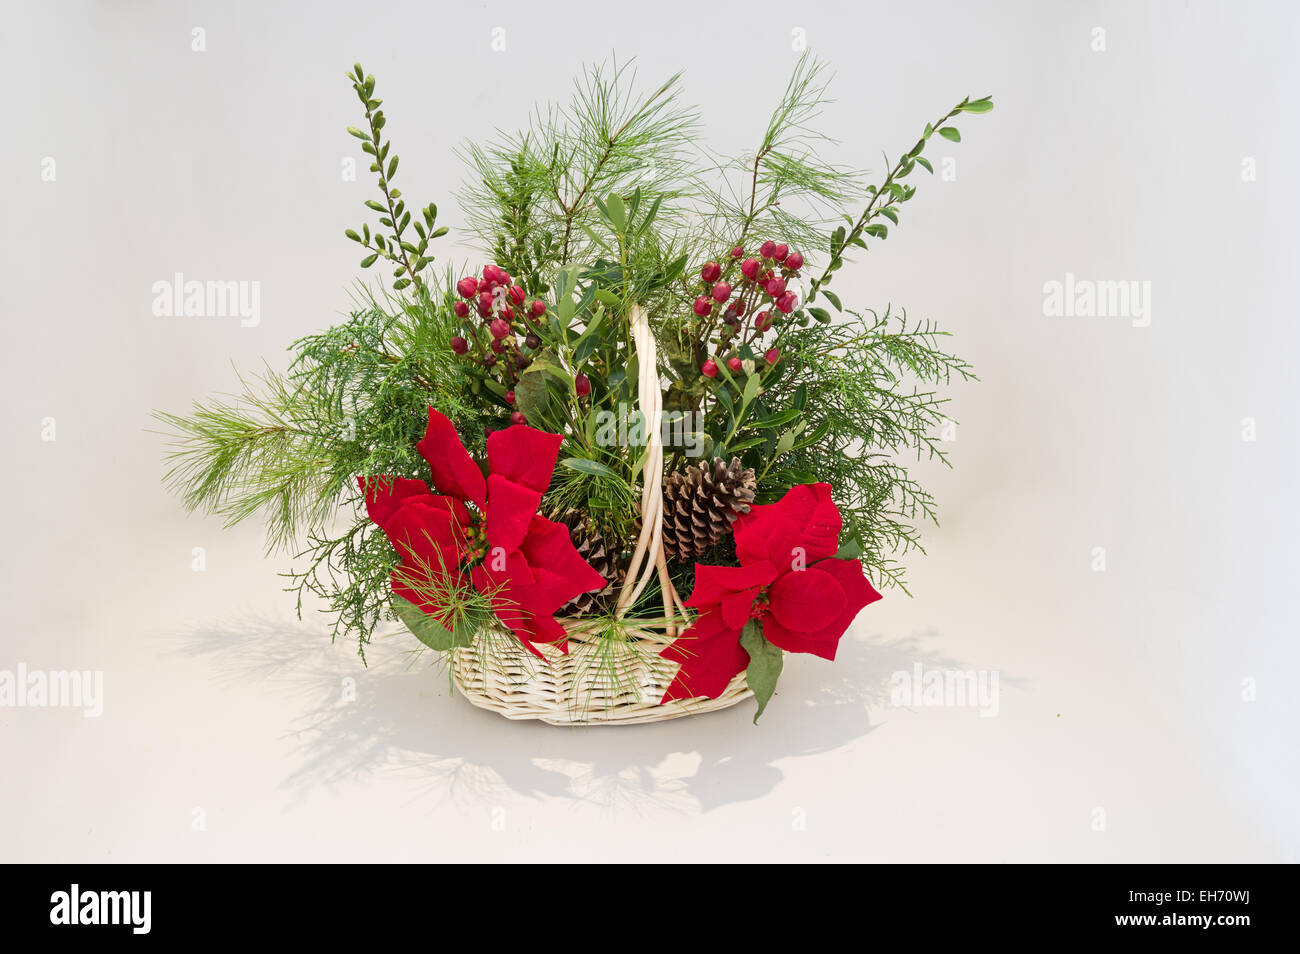 Arrangement avec panier de Noël poinsettia et evergreen verdure avec fond clair Banque D'Images